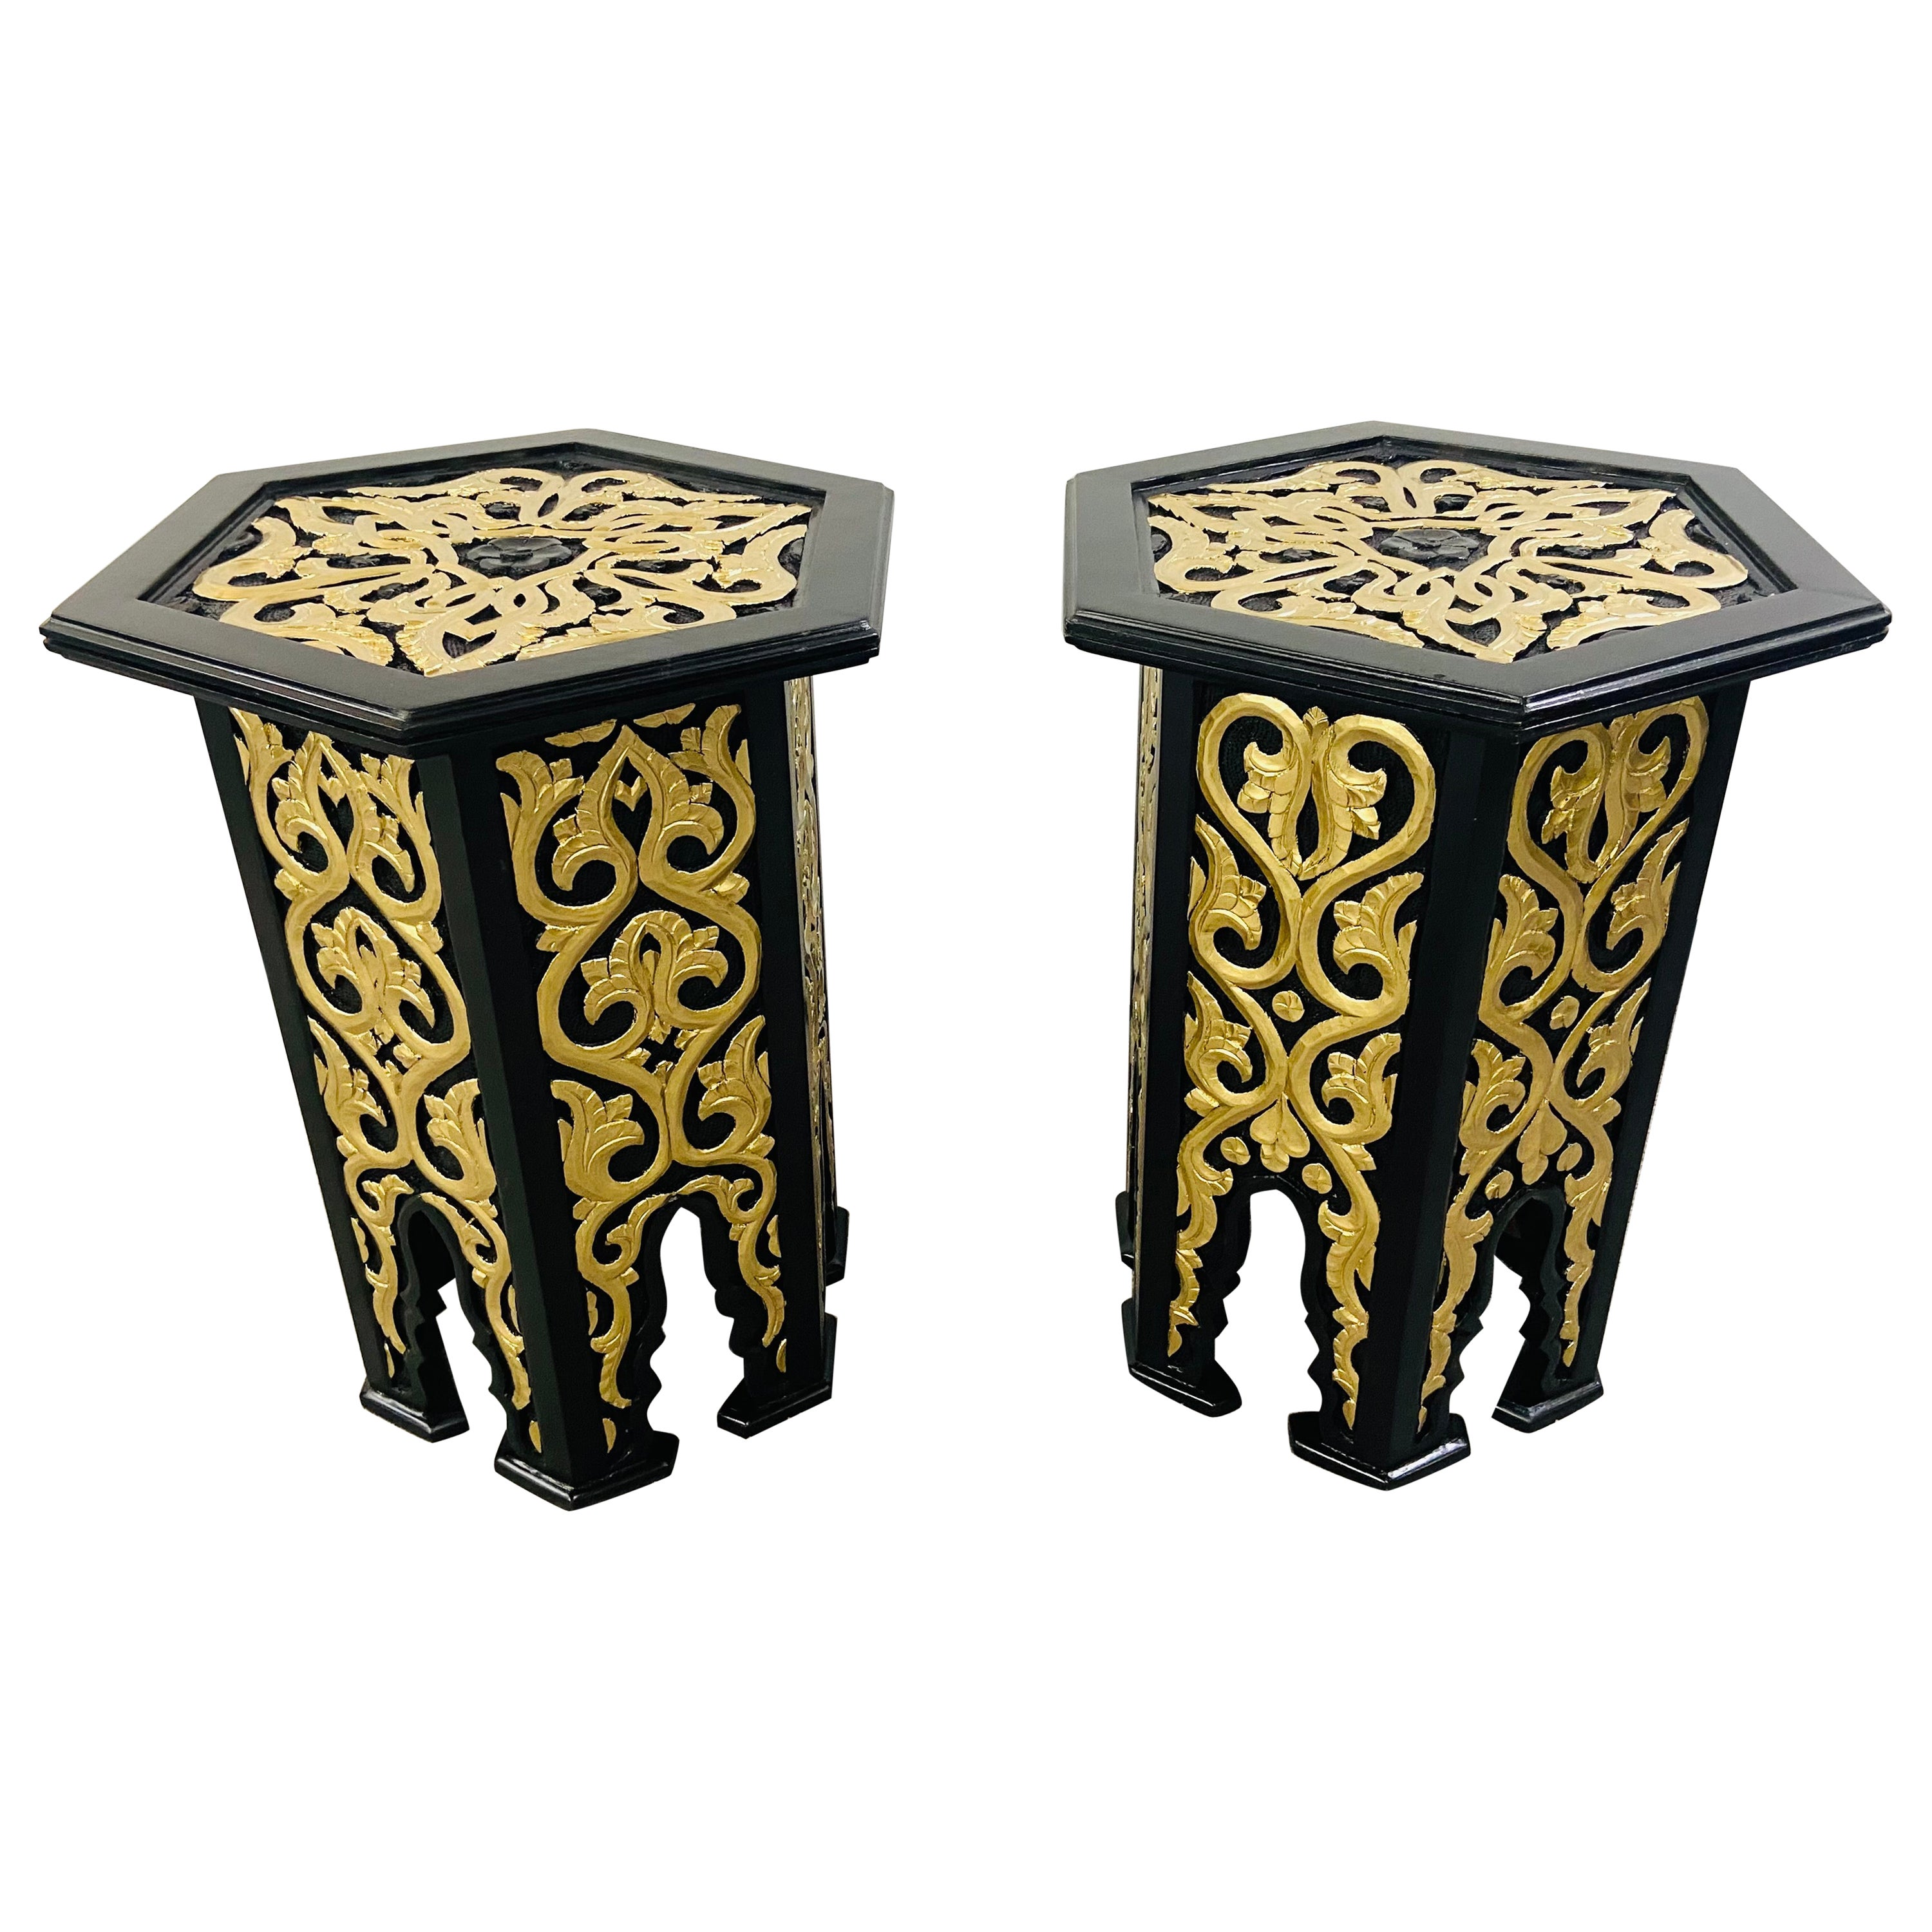 Paire de tables d'appoint ou de tables d'appoint marocaines Stye noires de style Hollywood Regency avec motif en or